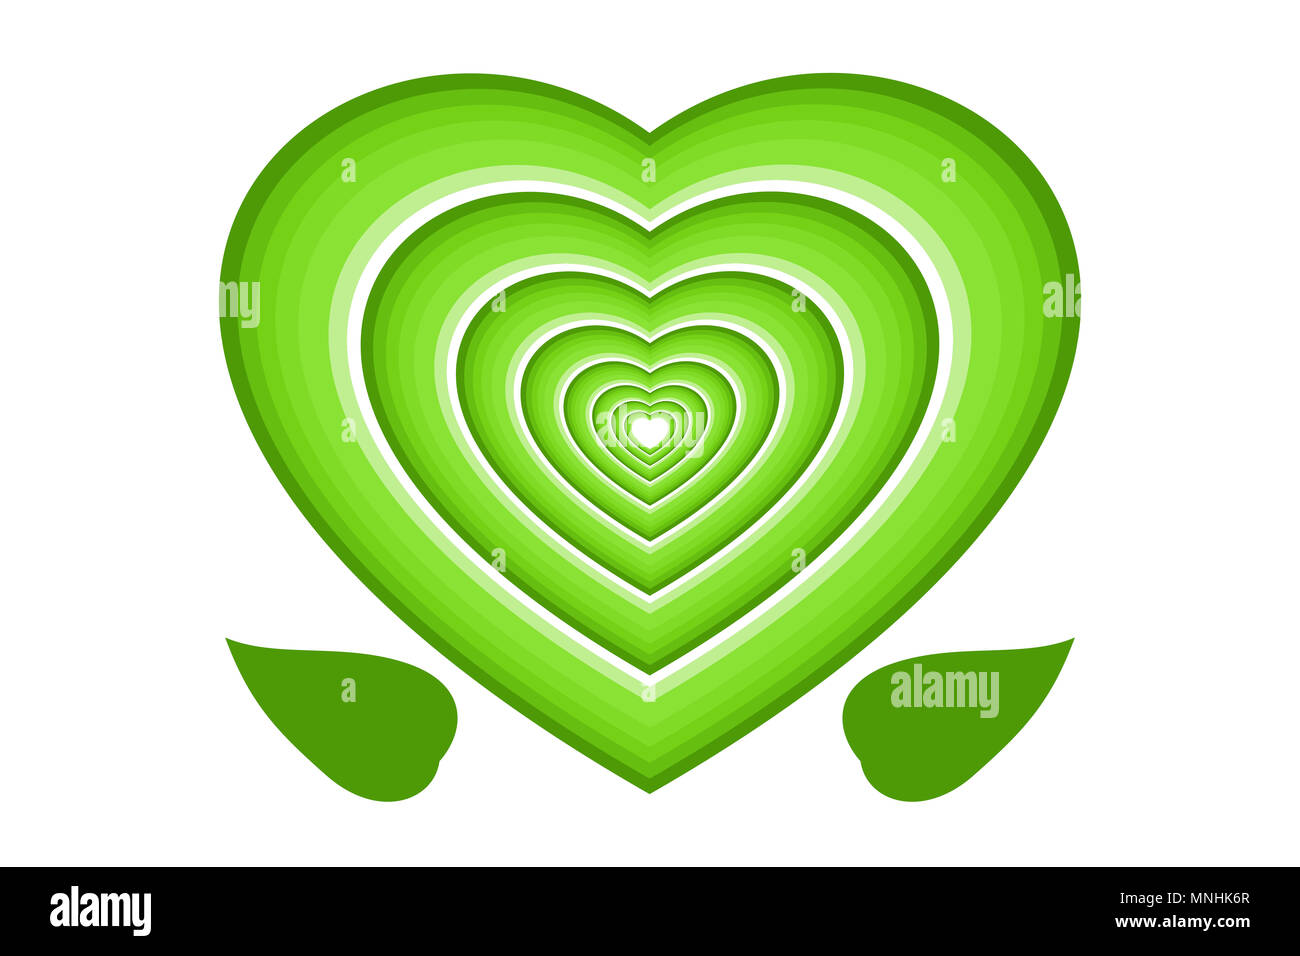 Concepto de conservación del medio ambiente. Verde corazones multicapa y hojas, aislado sobre fondo blanco. Foto de stock